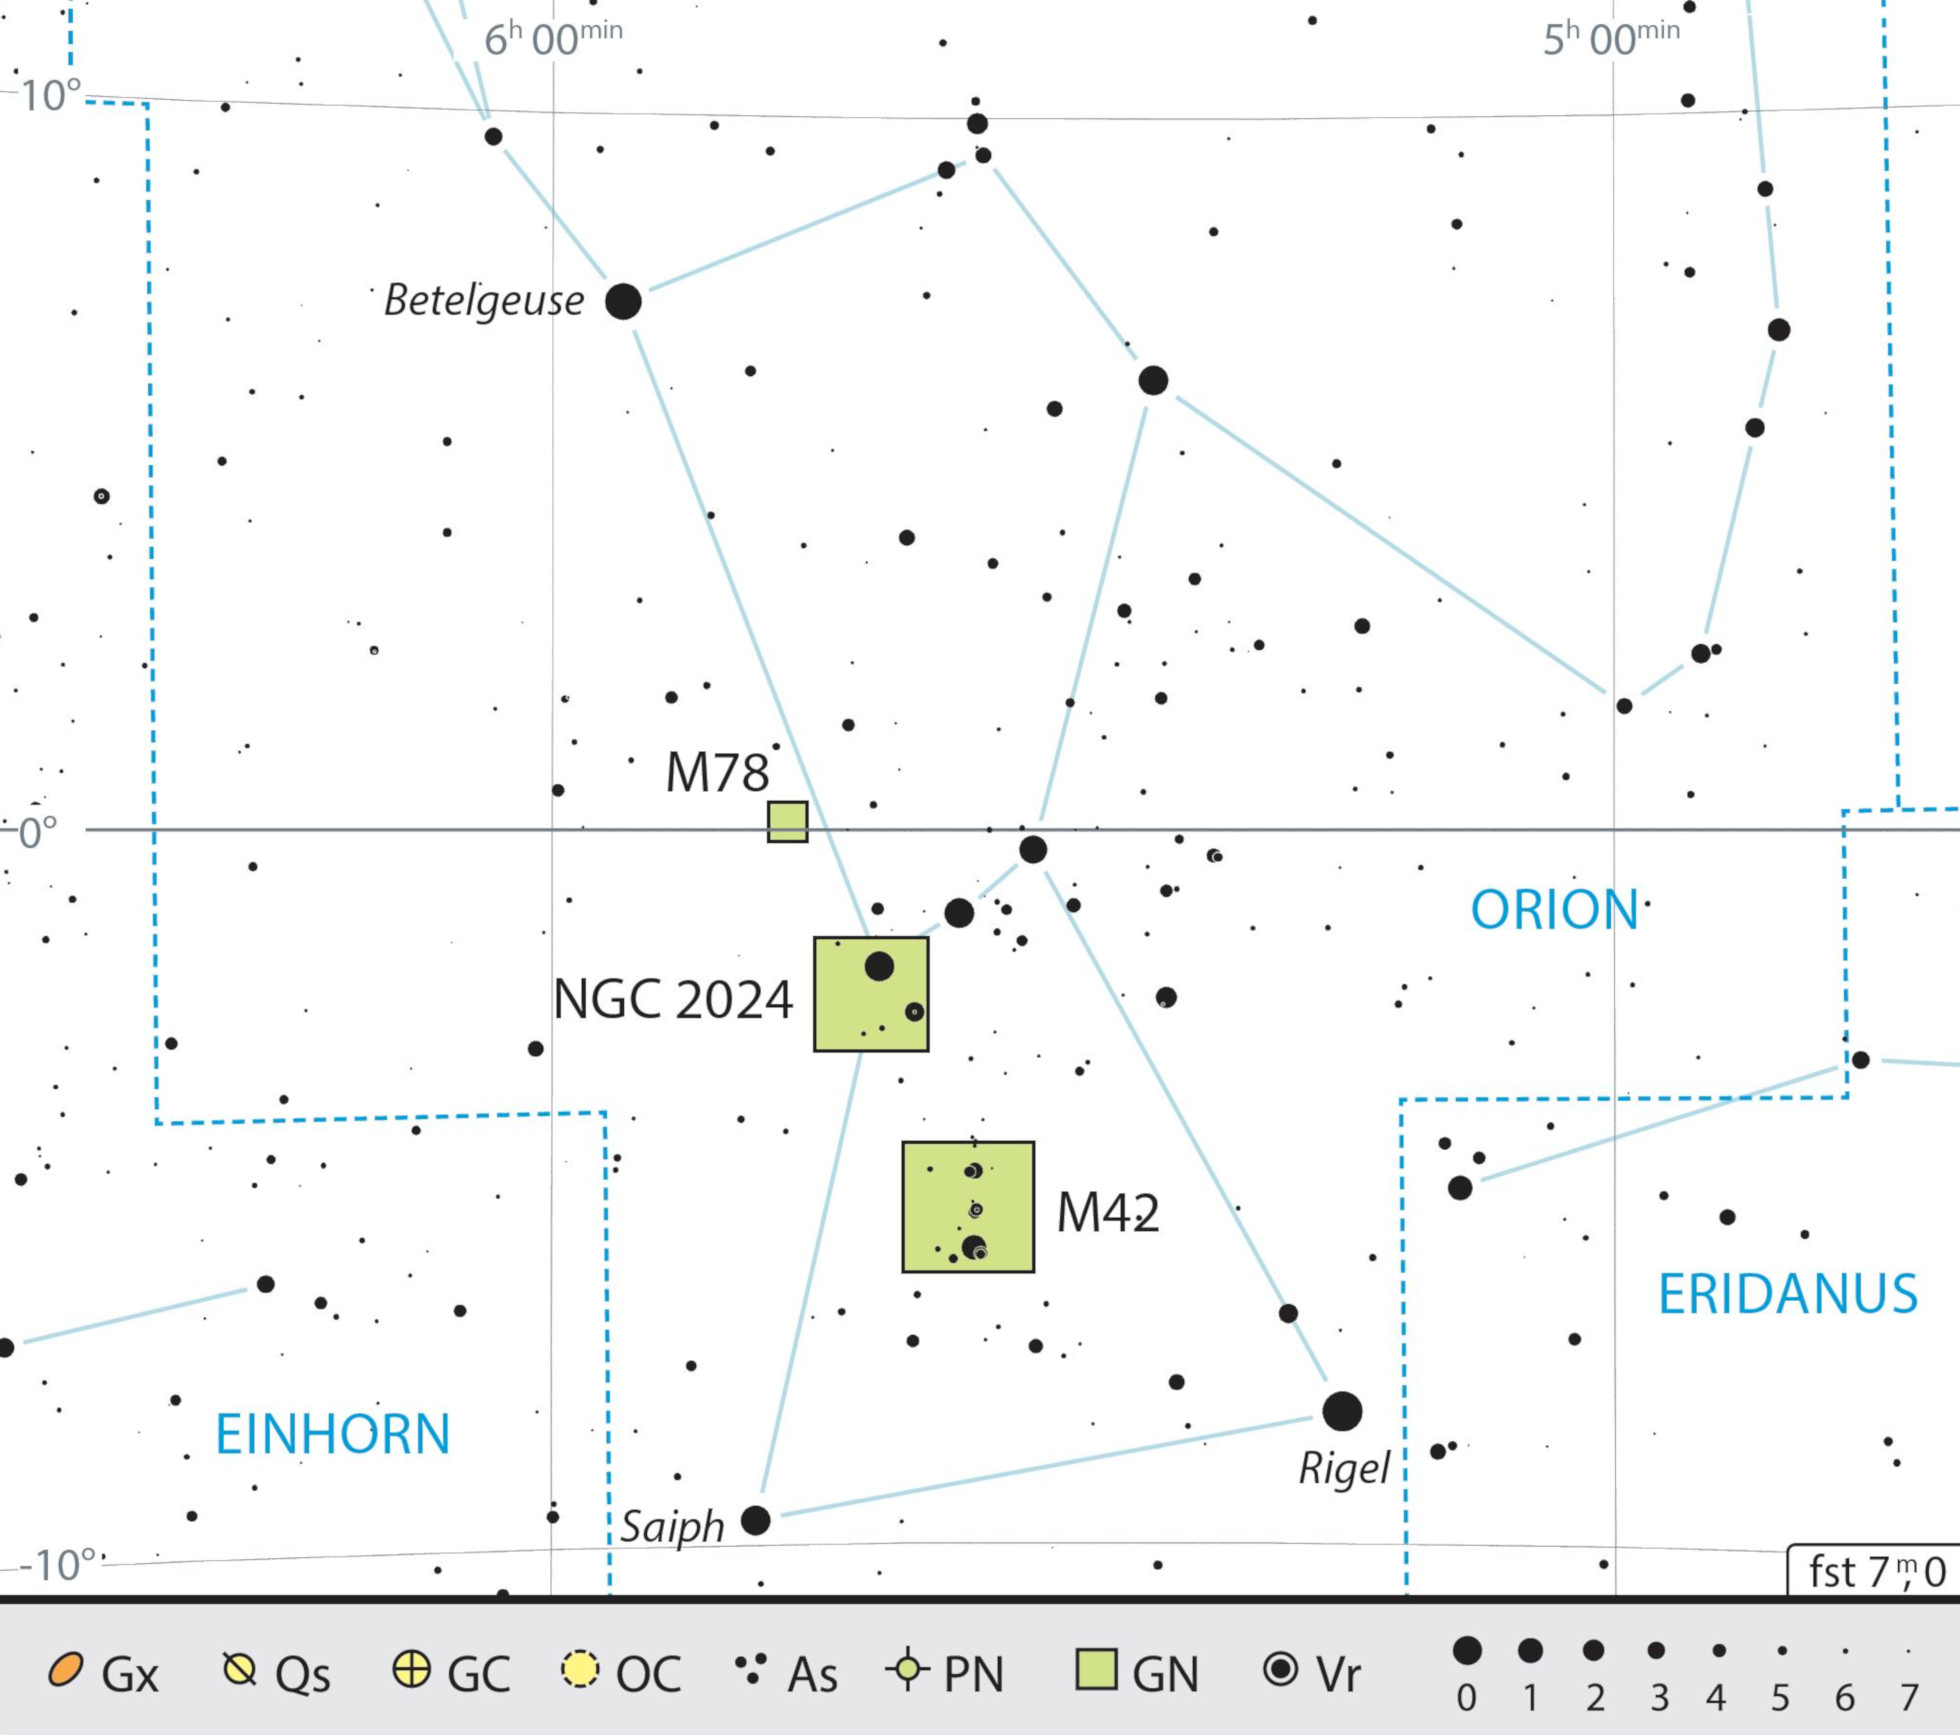 Mapa geral da constelação Oríon com as recomendações de observação. J. Scholten